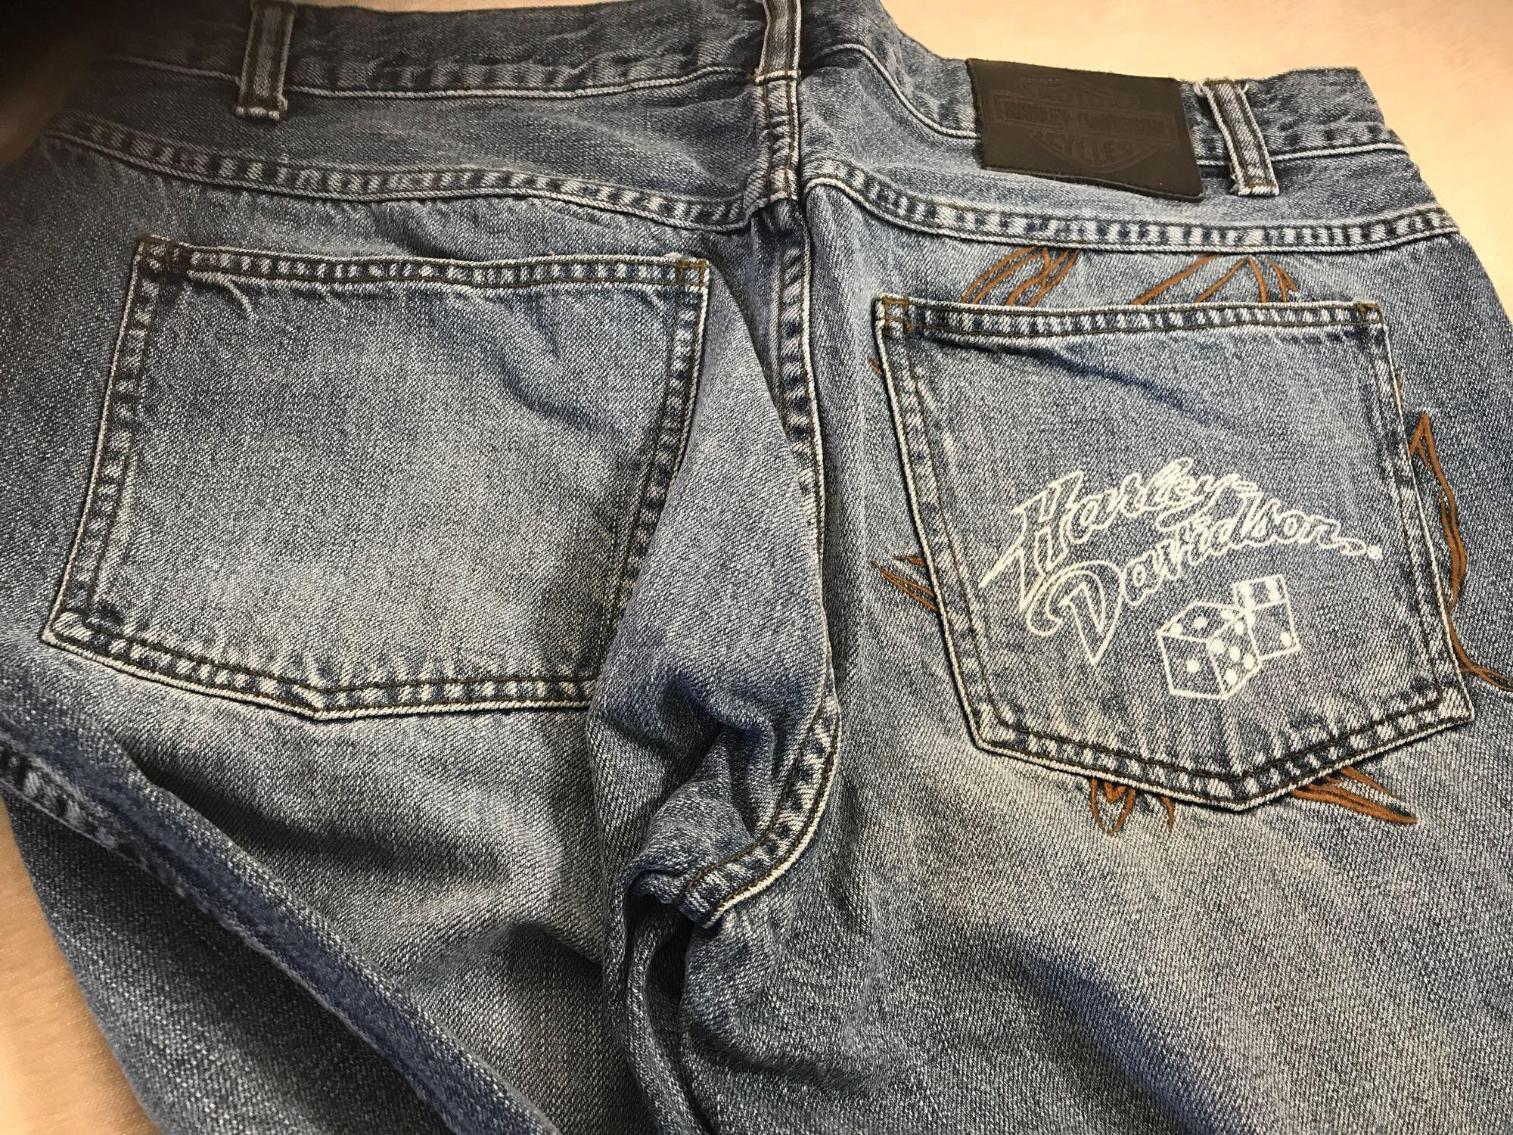 Image for Vintage Harley Davidson Jeans and Linen shirt